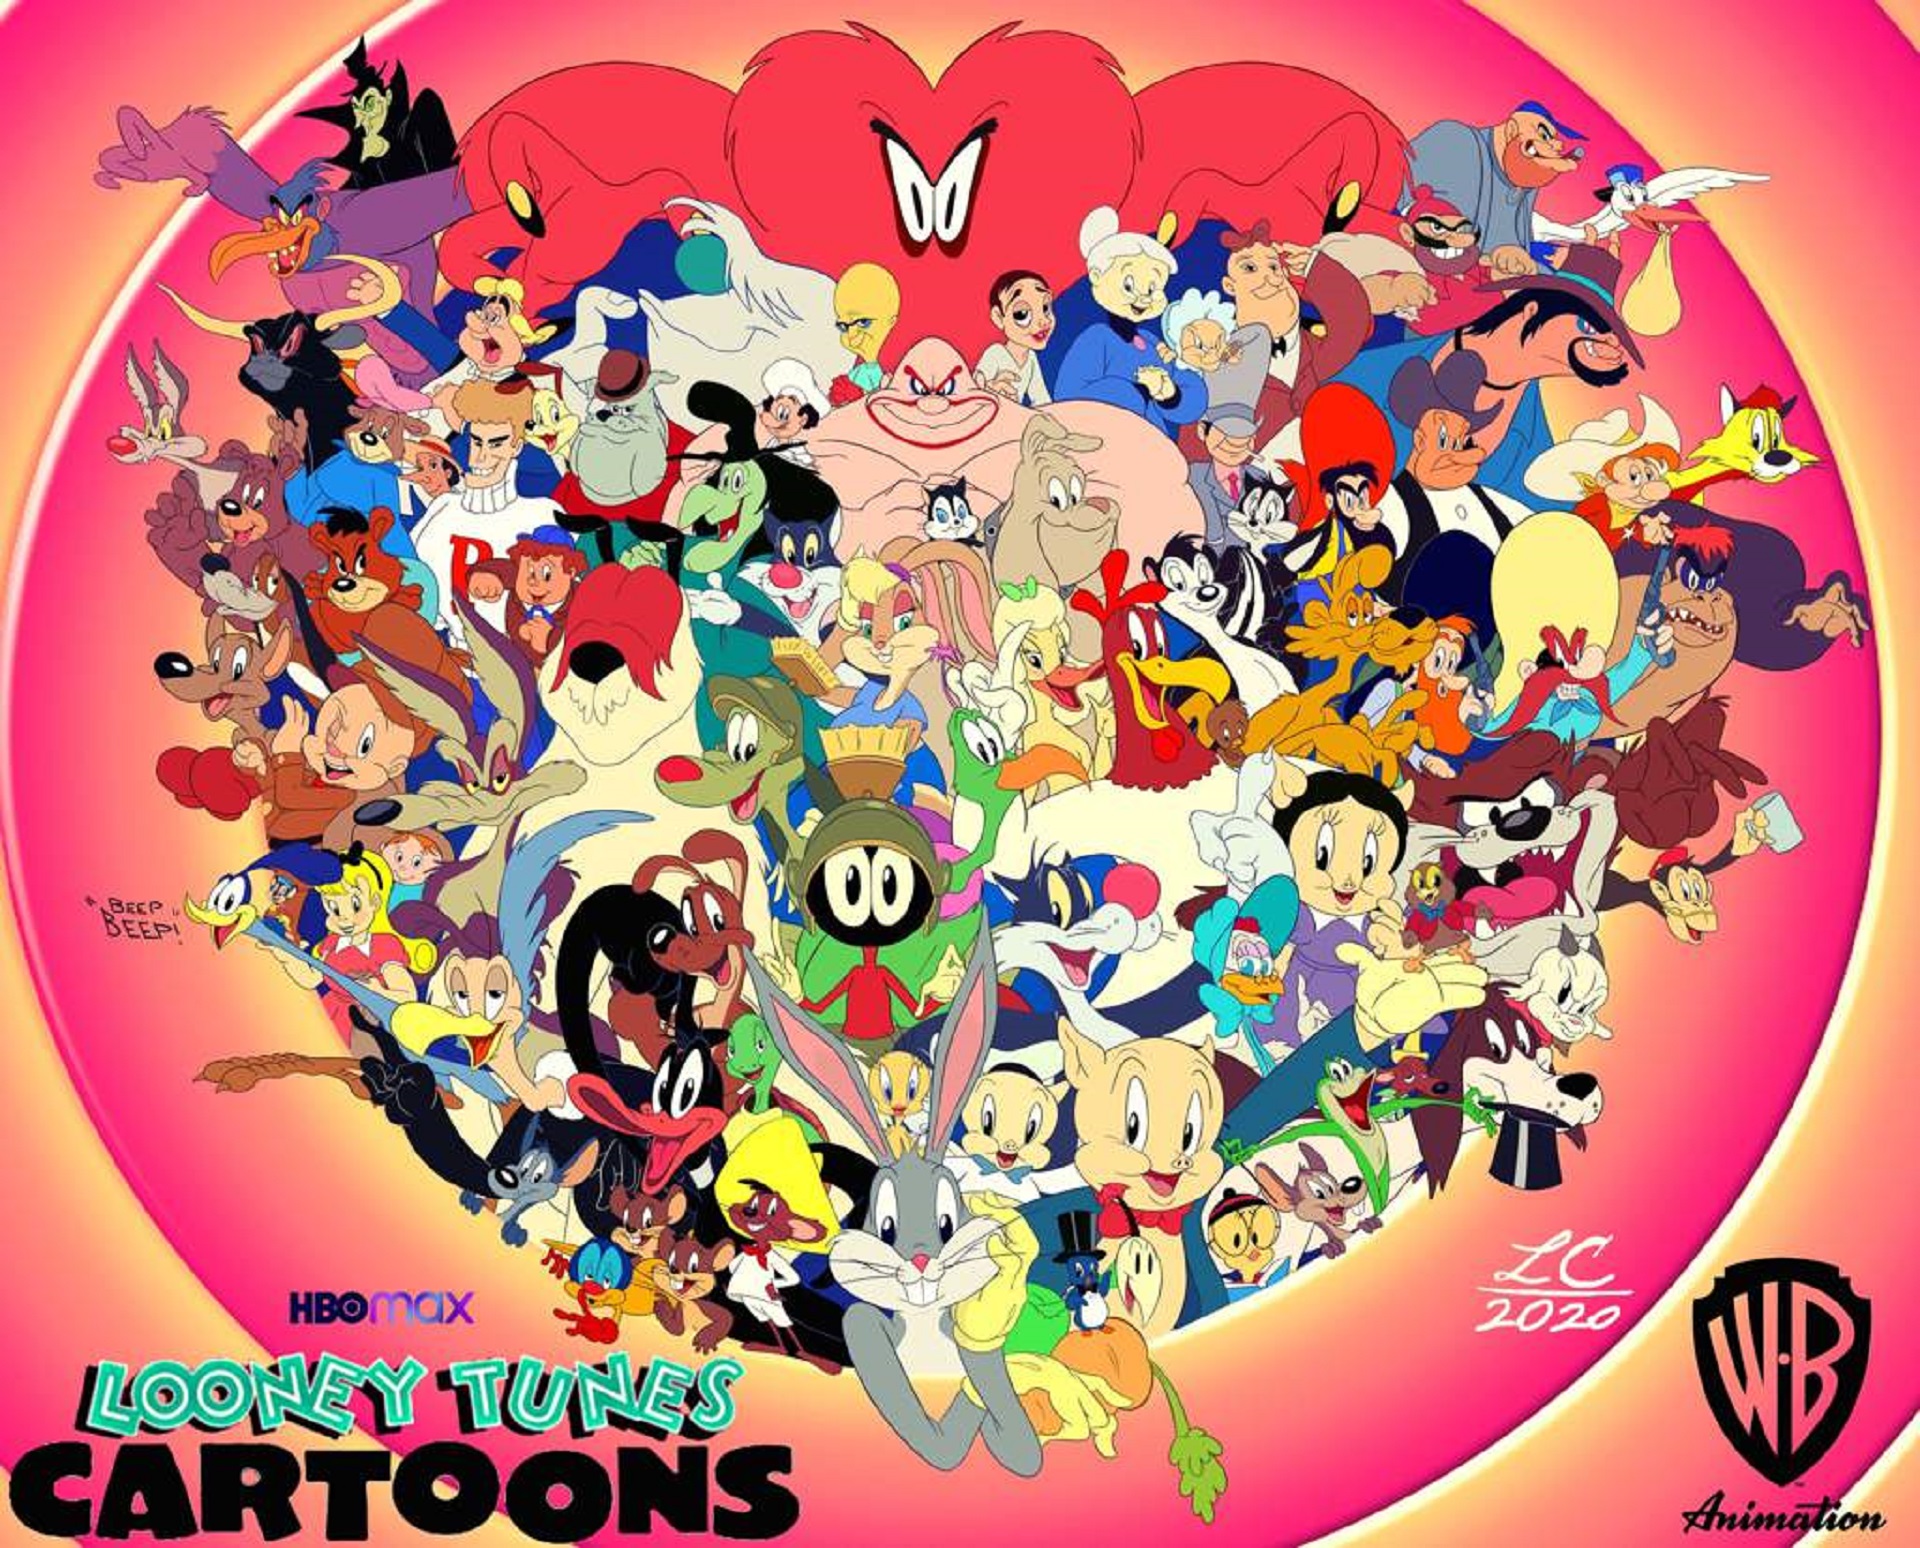 Hbo Max Y Cartoon Network Estrenan La Serie Looney Tunes Cartoons | My ...